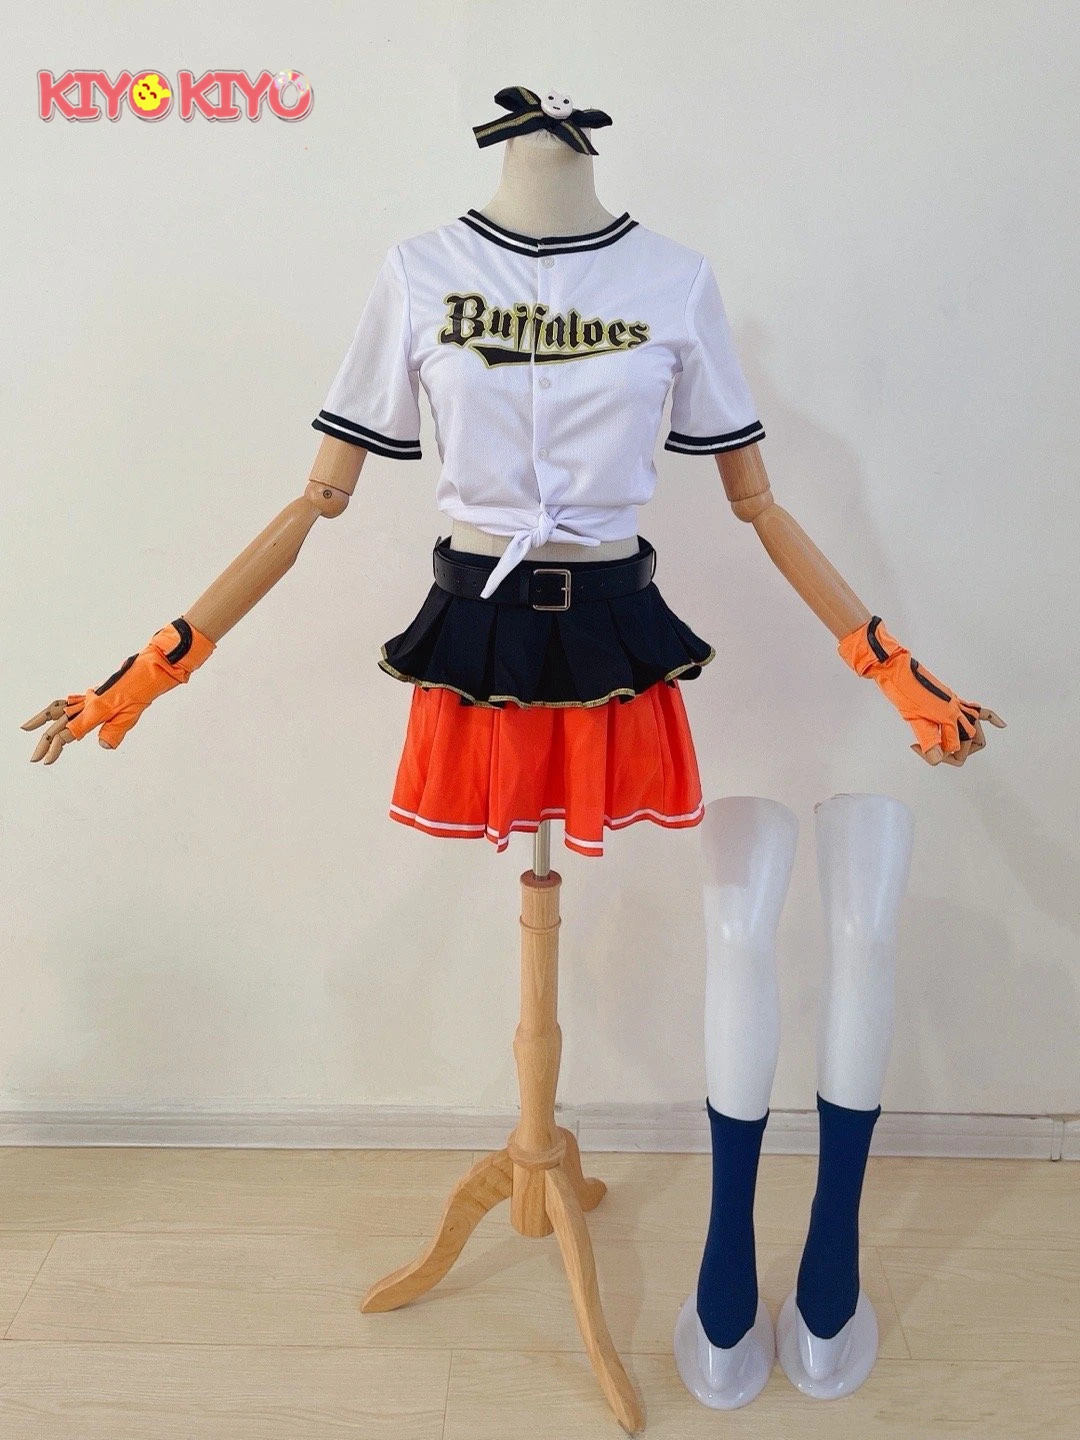 KIYO-KIYO Personalizate/dimensiune Hololive VTuber Shirogane Noel Natsuiro Matsuri Amane Kanata Inugami Korone Uniforma de Baseball Cosplay